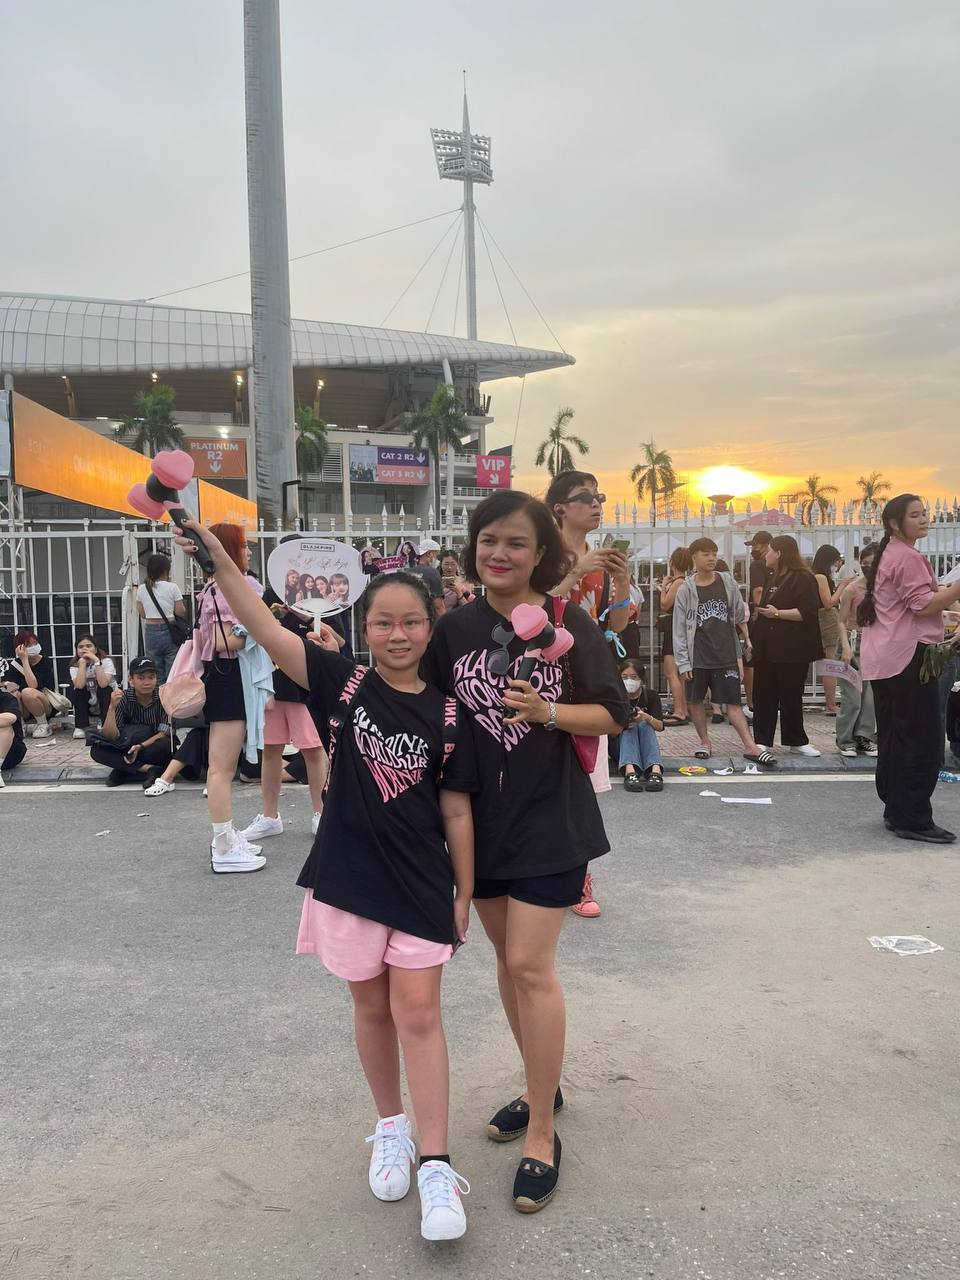 Các gia đình đến ủng hộ đêm diễn cuối cùng của BLACKPINK tại Hà Nội, nhiều người chấp nhận ôm vé vì không muốn bị ép giá - Ảnh 4.